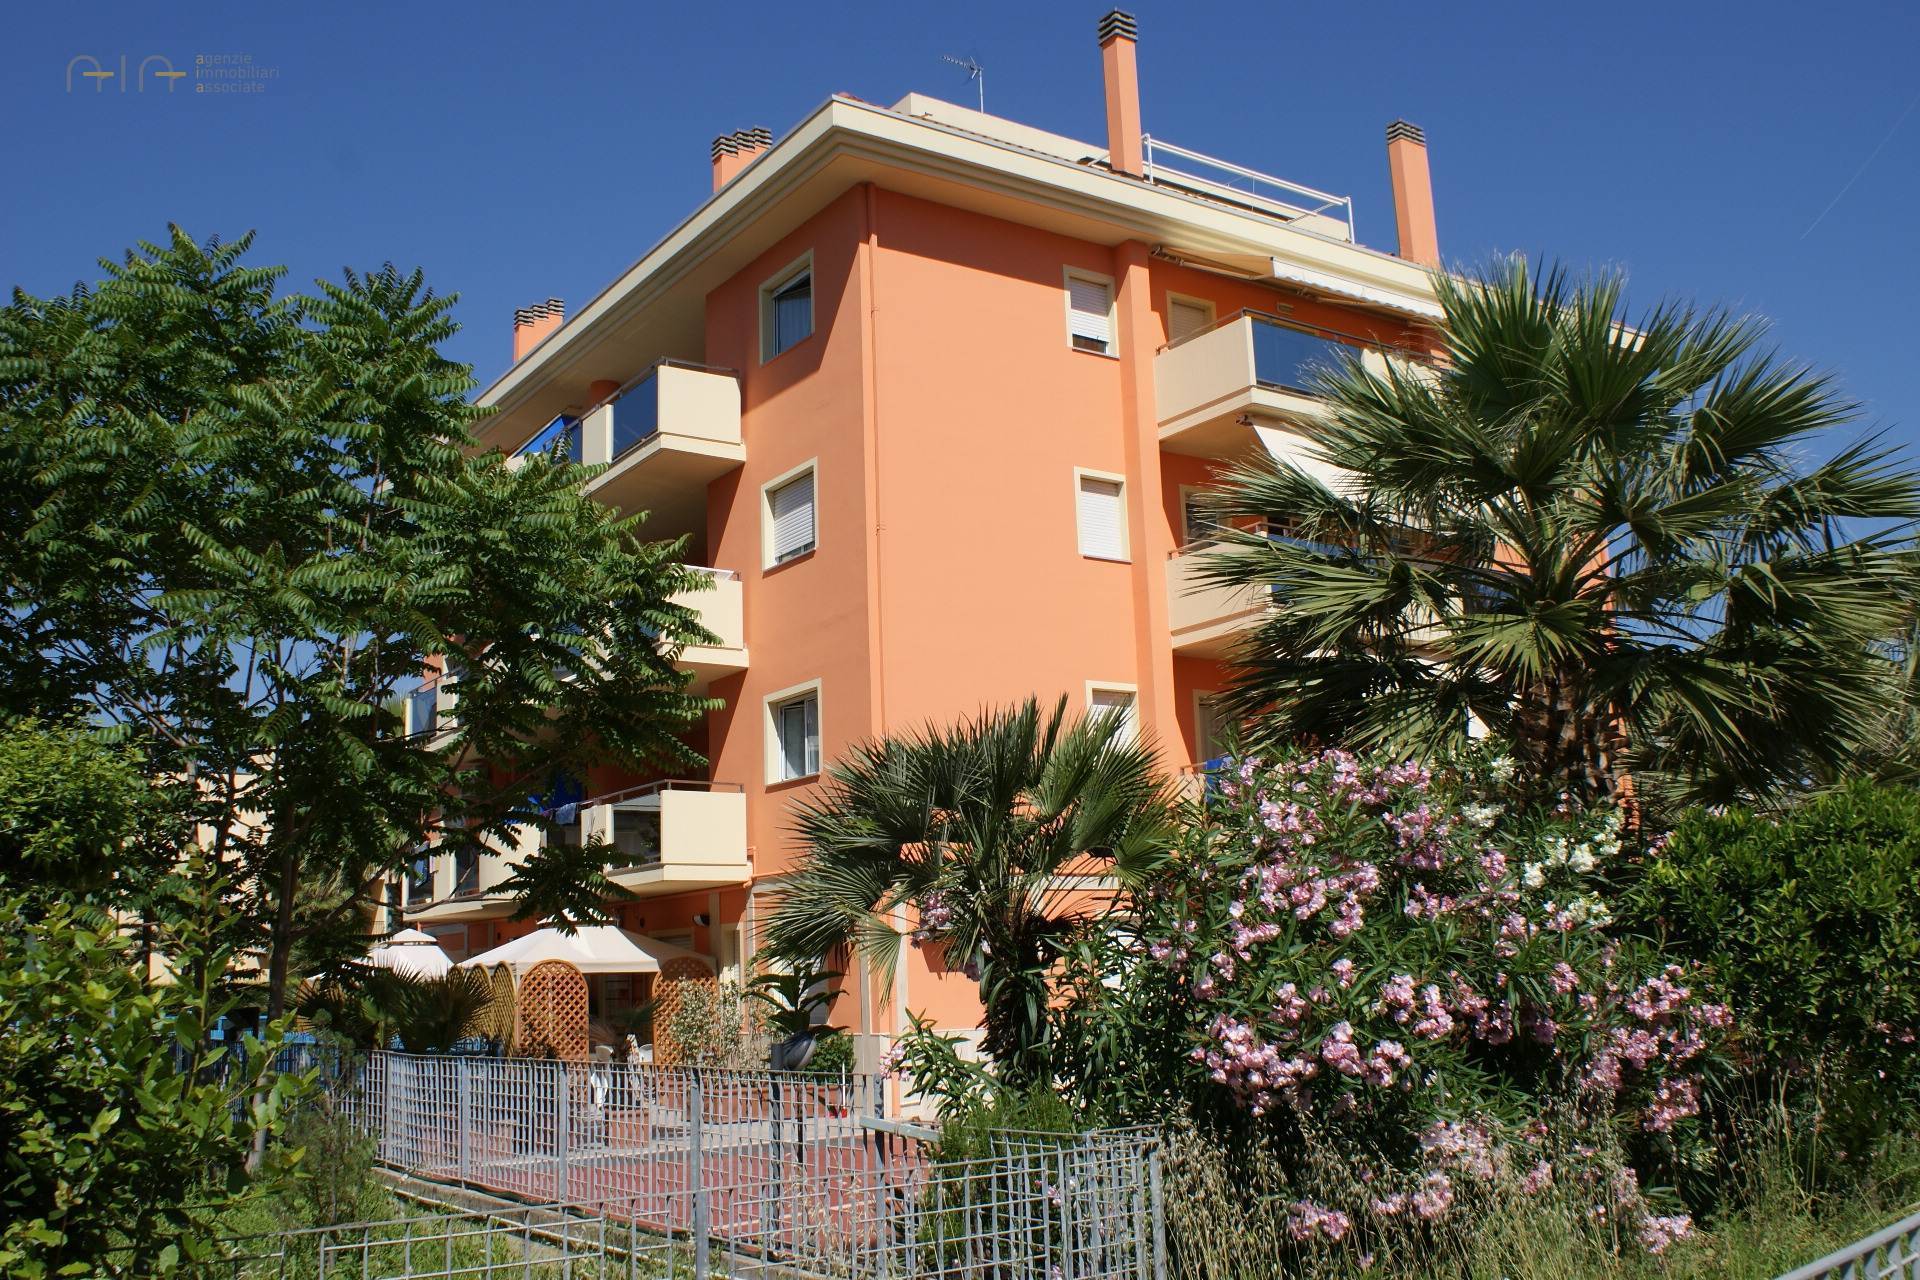 Appartamento in vendita a San Benedetto del Tronto, 3 locali, zona Località: PortoDascolilungomare, prezzo € 270.000 | PortaleAgenzieImmobiliari.it